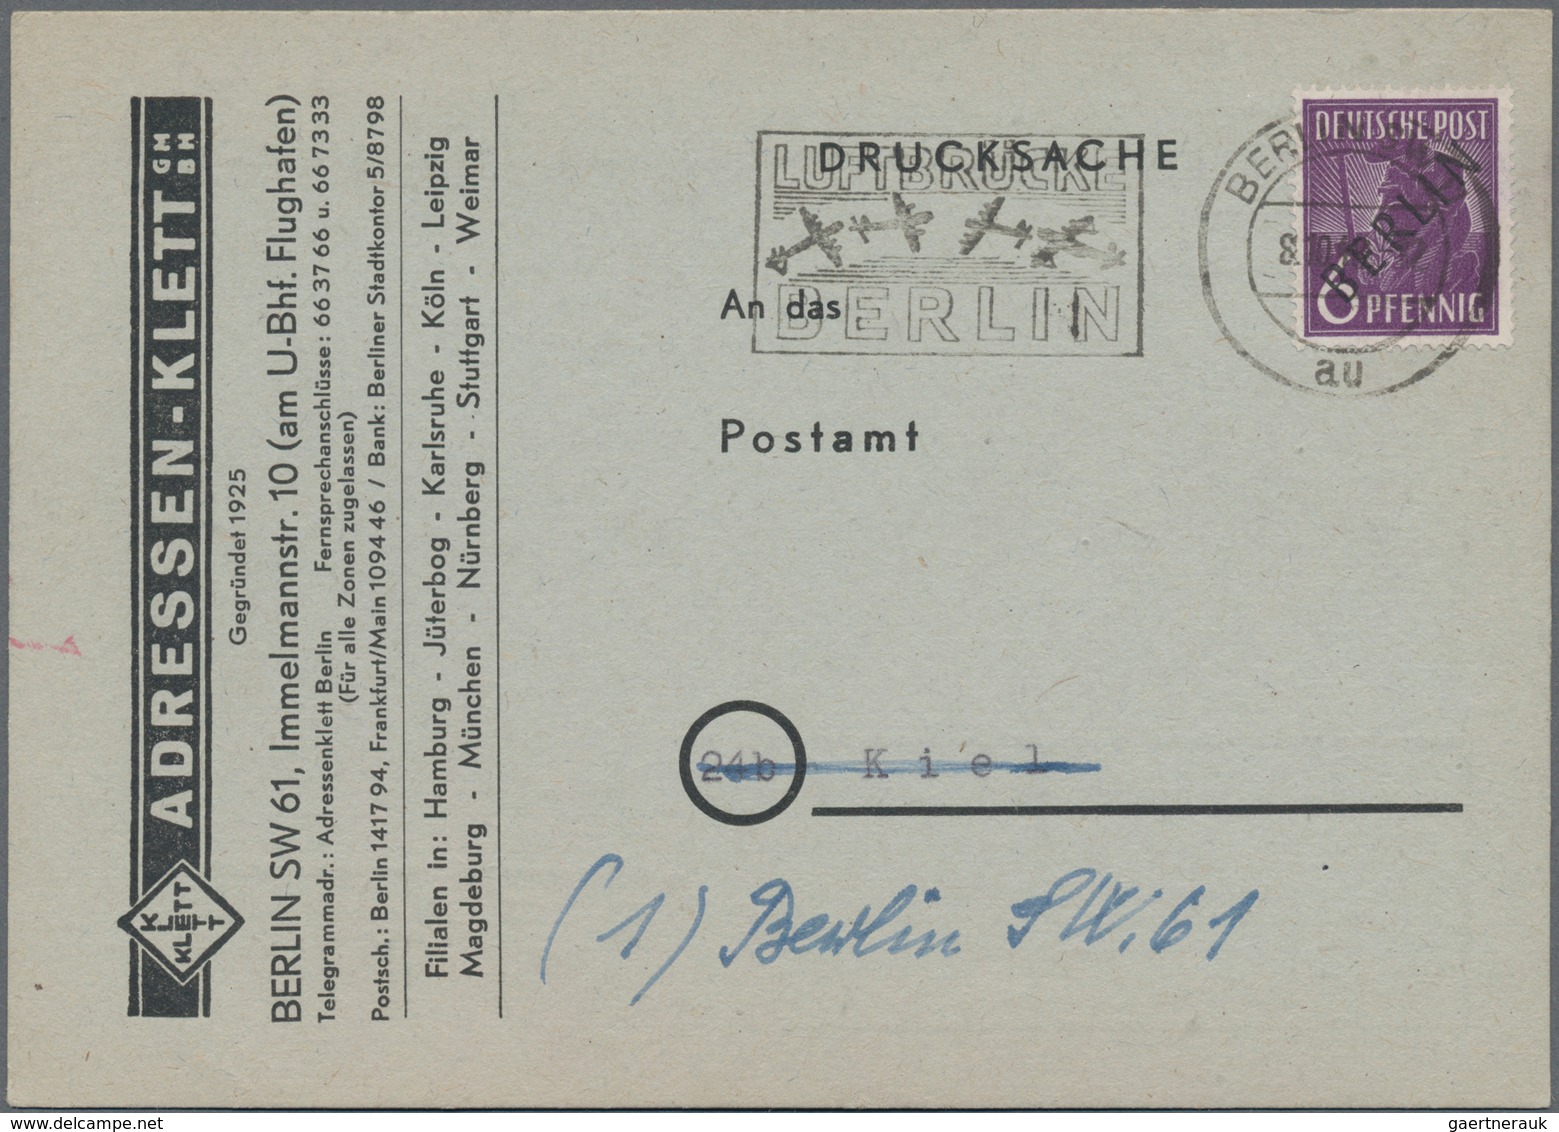 Berlin: 1948, 6 Pf. Schwarzaufdruck Mit Masch.Stpl. BERLIN SW 61 / 8.10.48 Auf Vorgedruckter Anschri - Covers & Documents